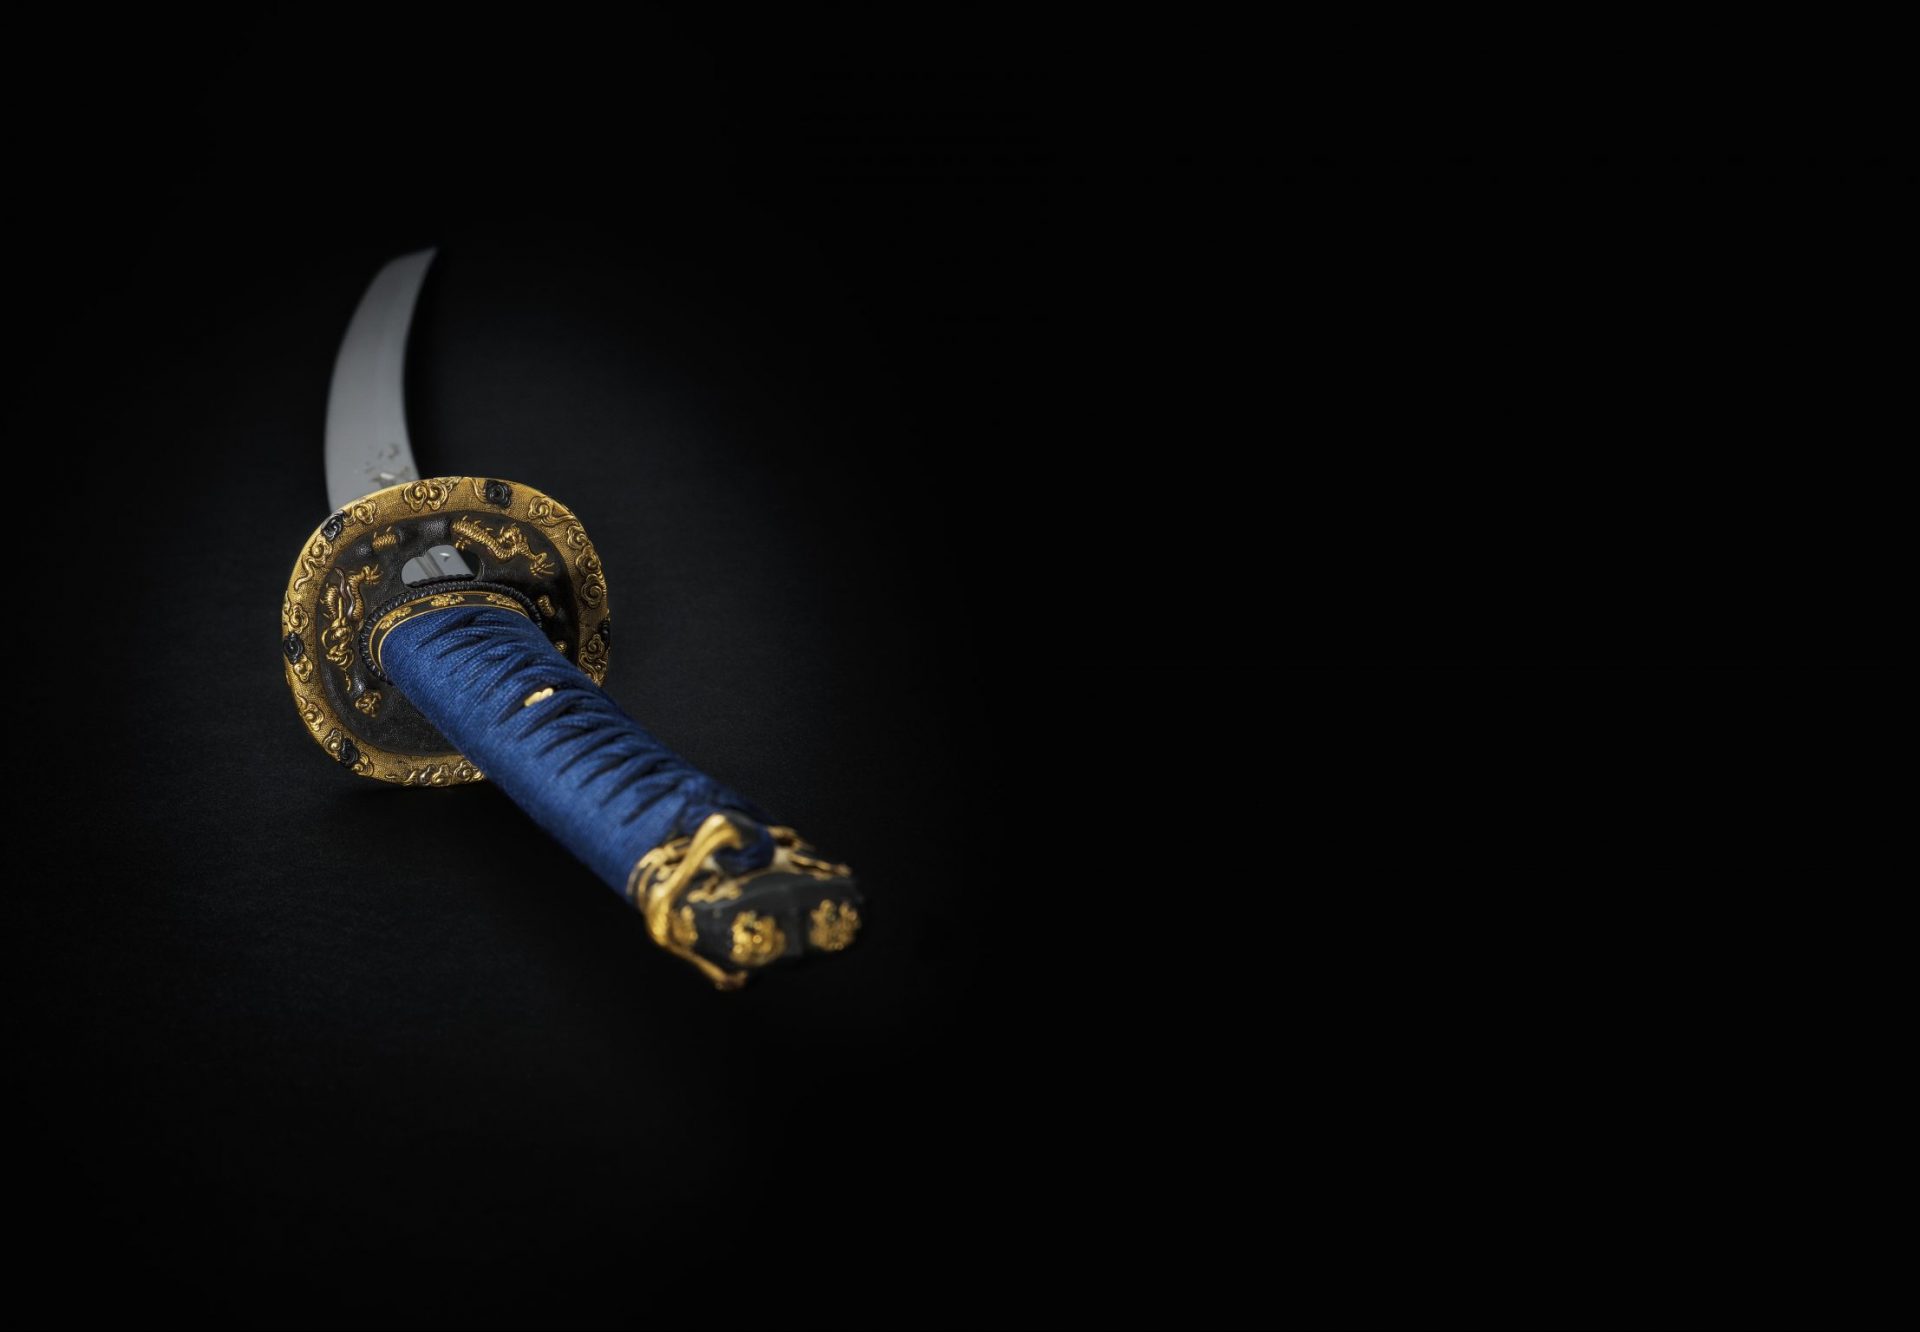 Närbild av svärd med blått handtag och guldinslag.